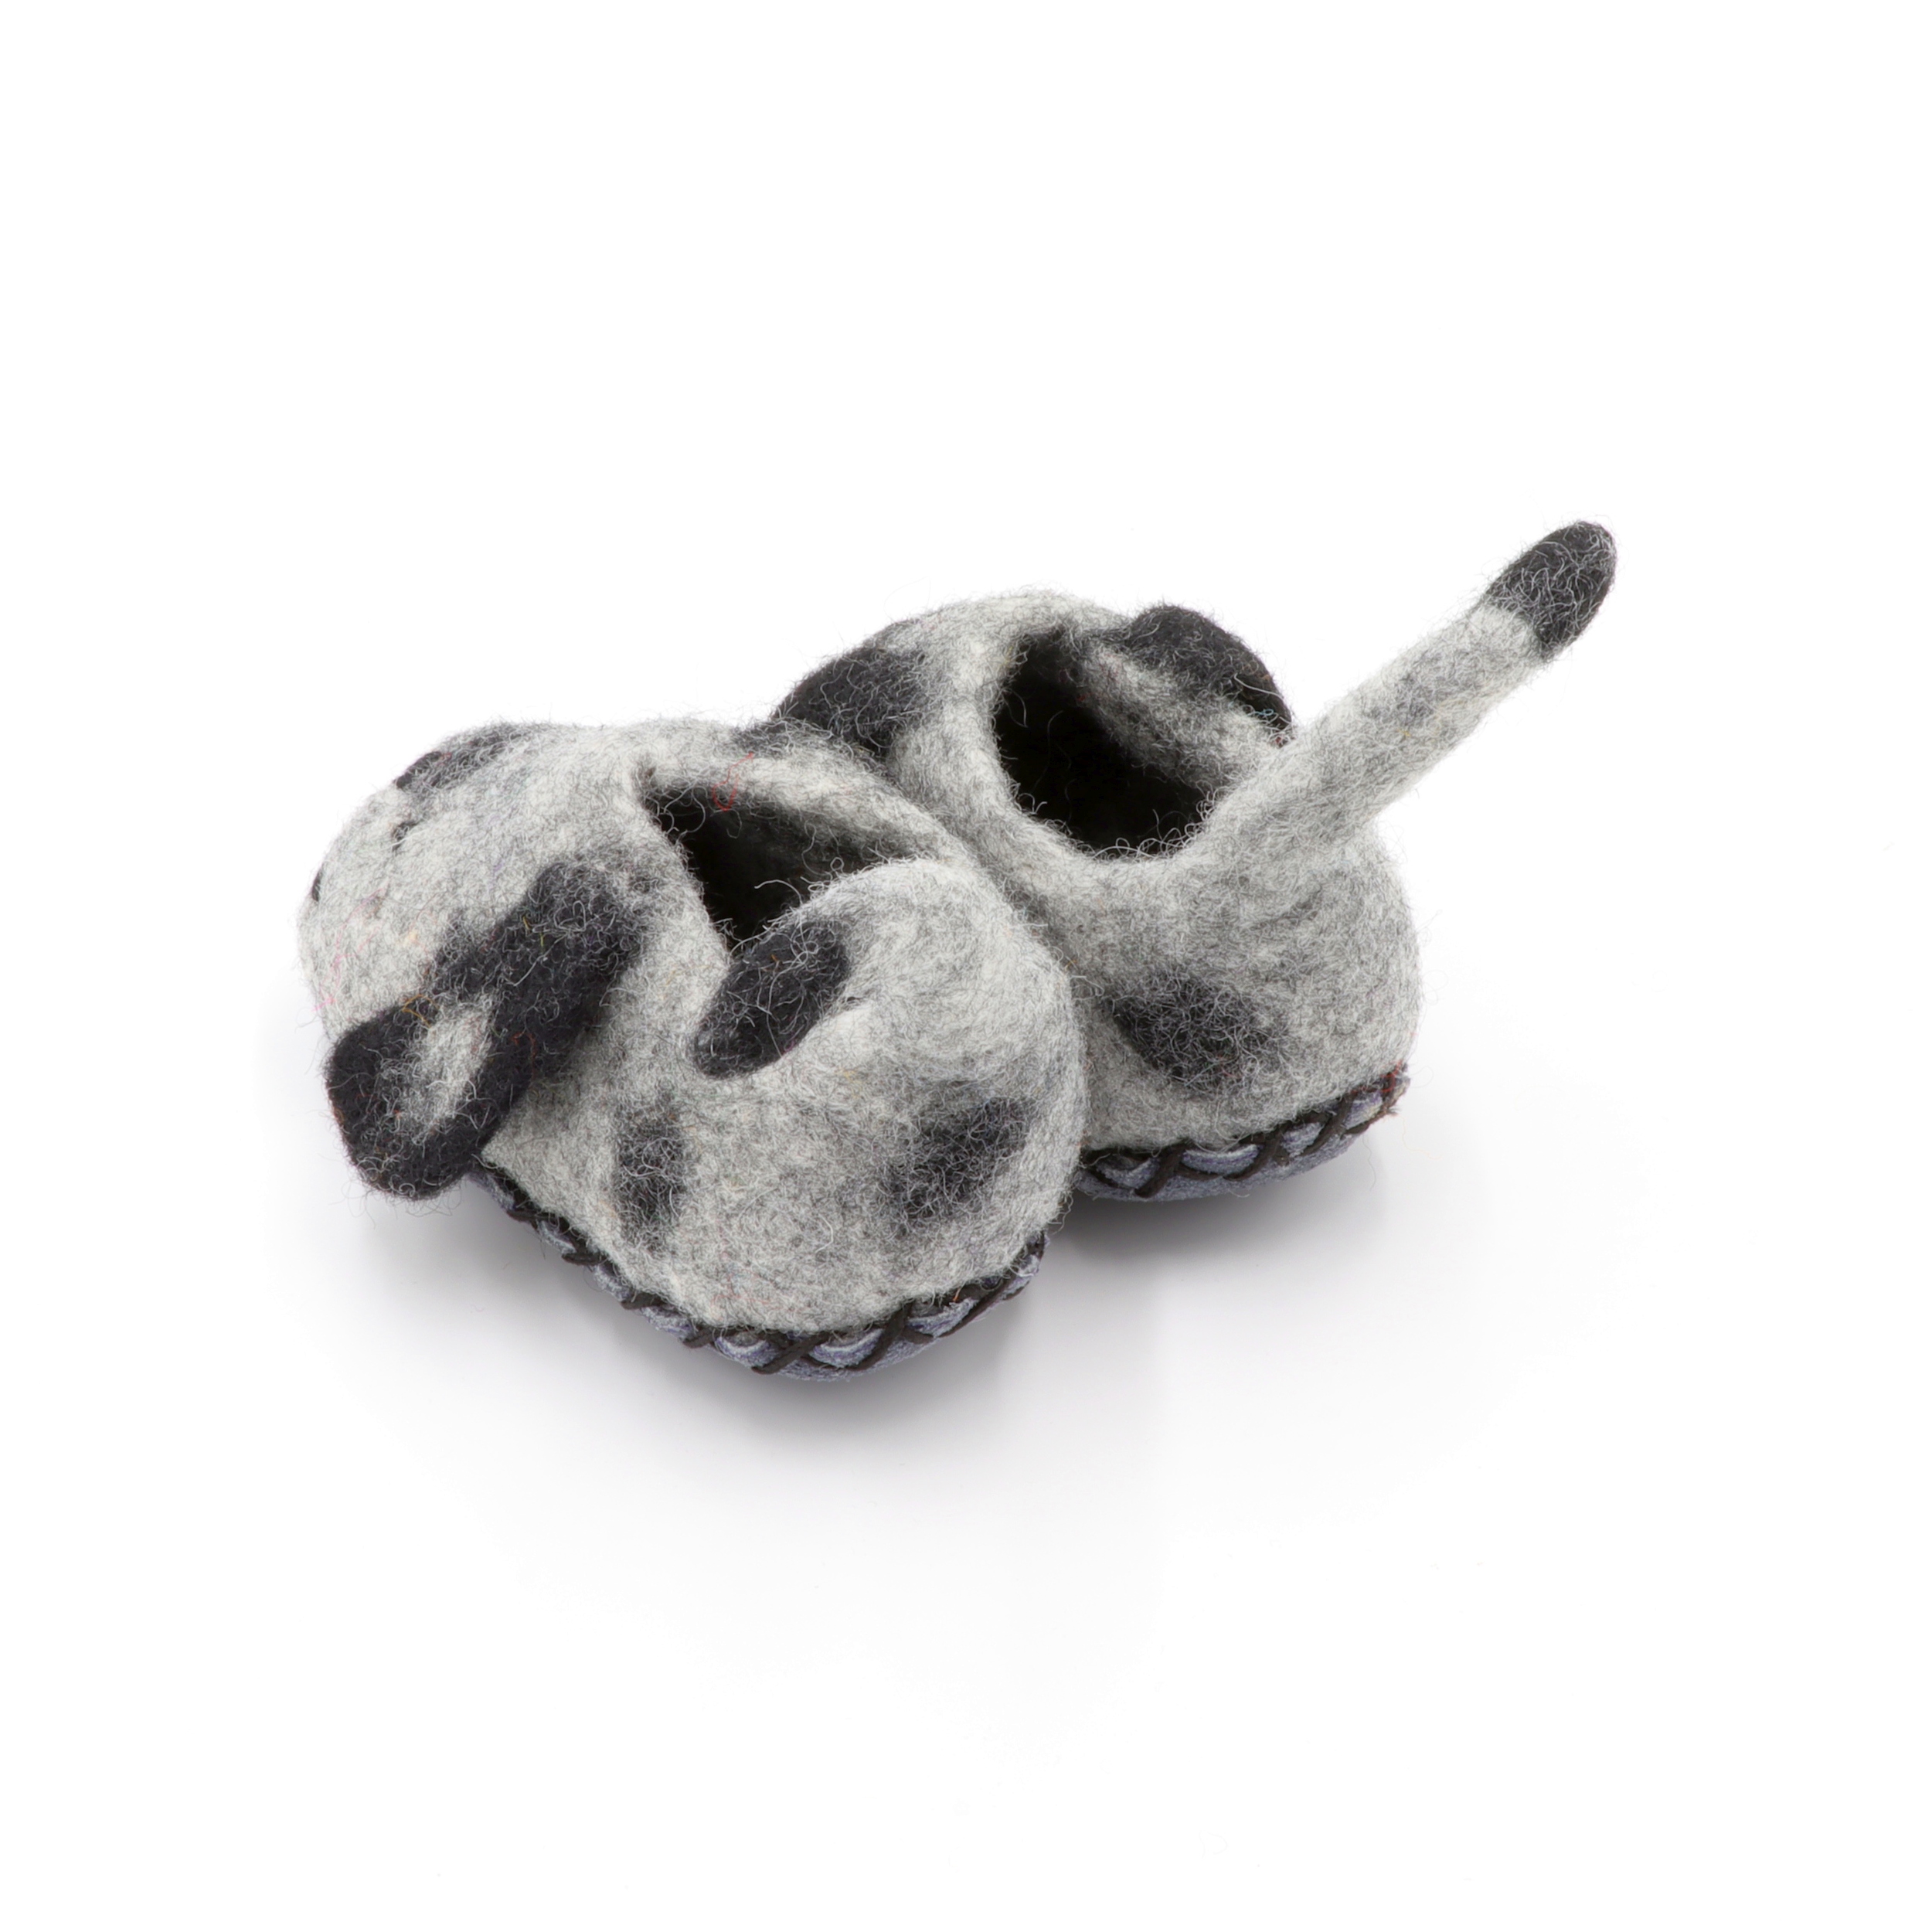 Schuhe aus Filz für Kinder - Der Graue Hund - rutschfeste Sohle aus Wildleder